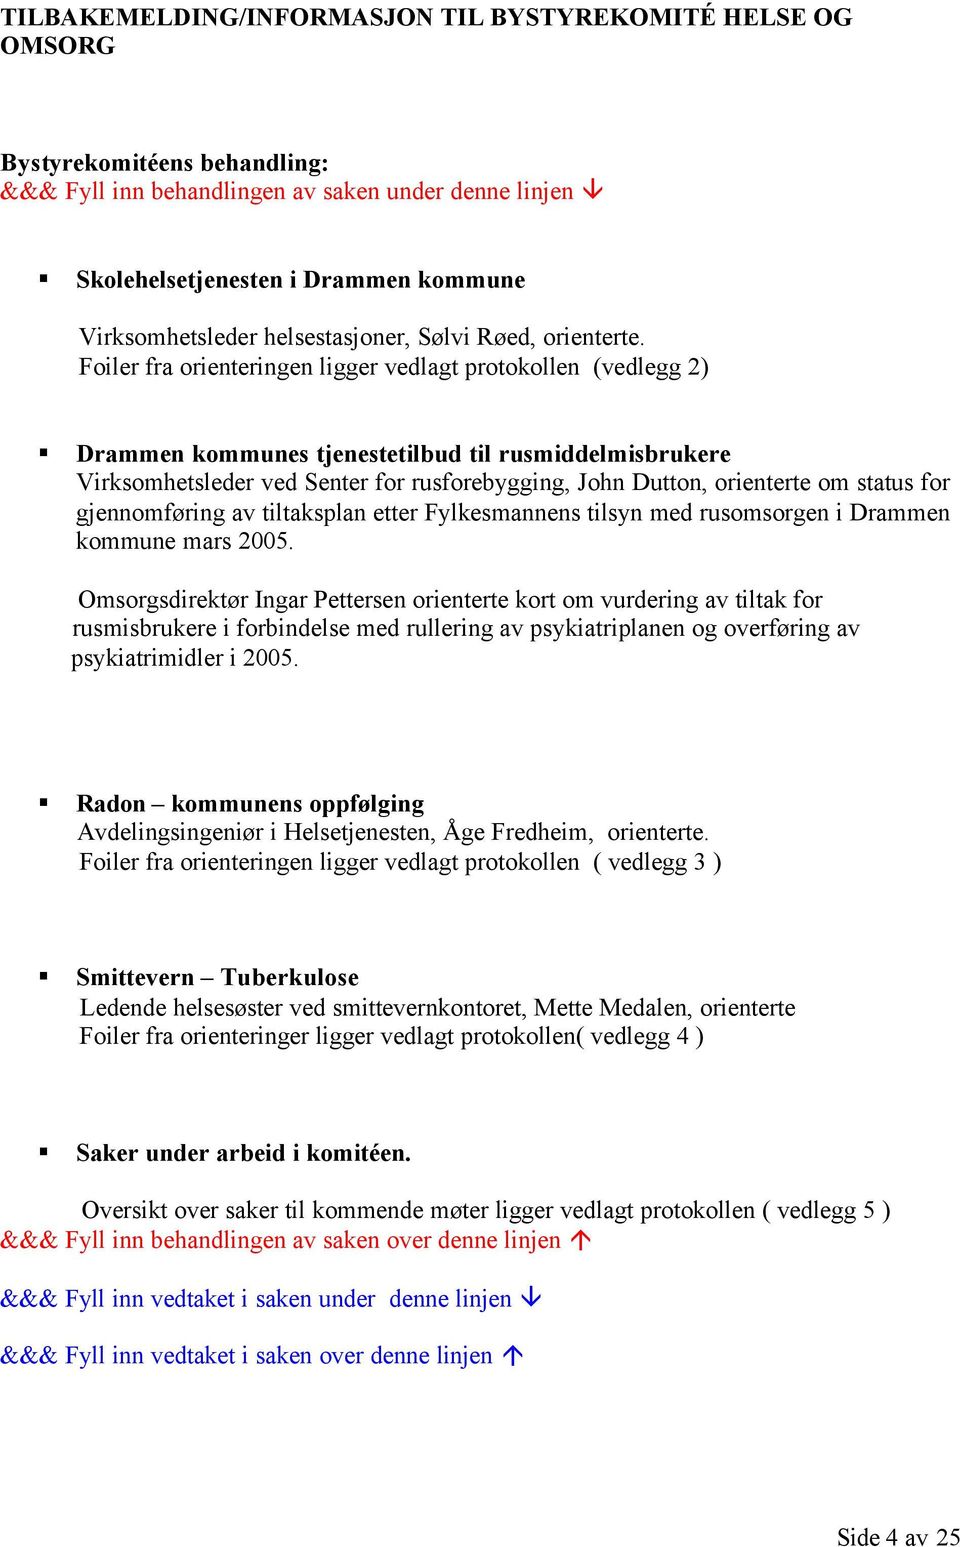 Foiler fra orienteringen ligger vedlagt protokollen (vedlegg 2) Drammen kommunes tjenestetilbud til rusmiddelmisbrukere Virksomhetsleder ved Senter for rusforebygging, John Dutton, orienterte om